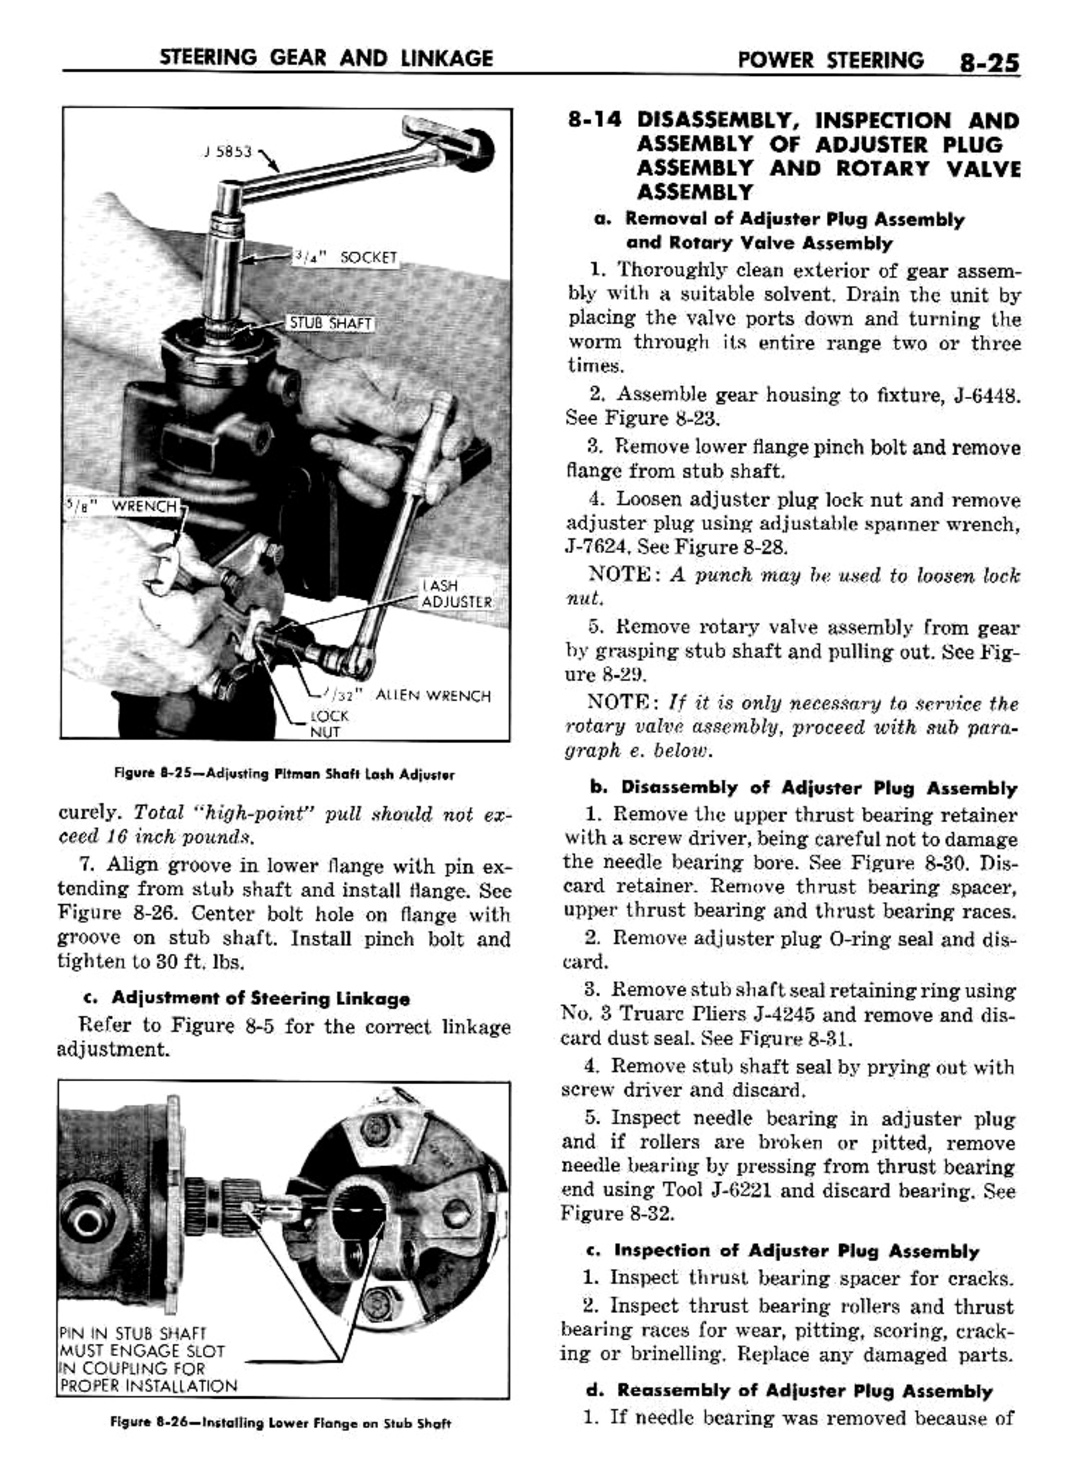 n_09 1960 Buick Shop Manual - Steering-025-025.jpg